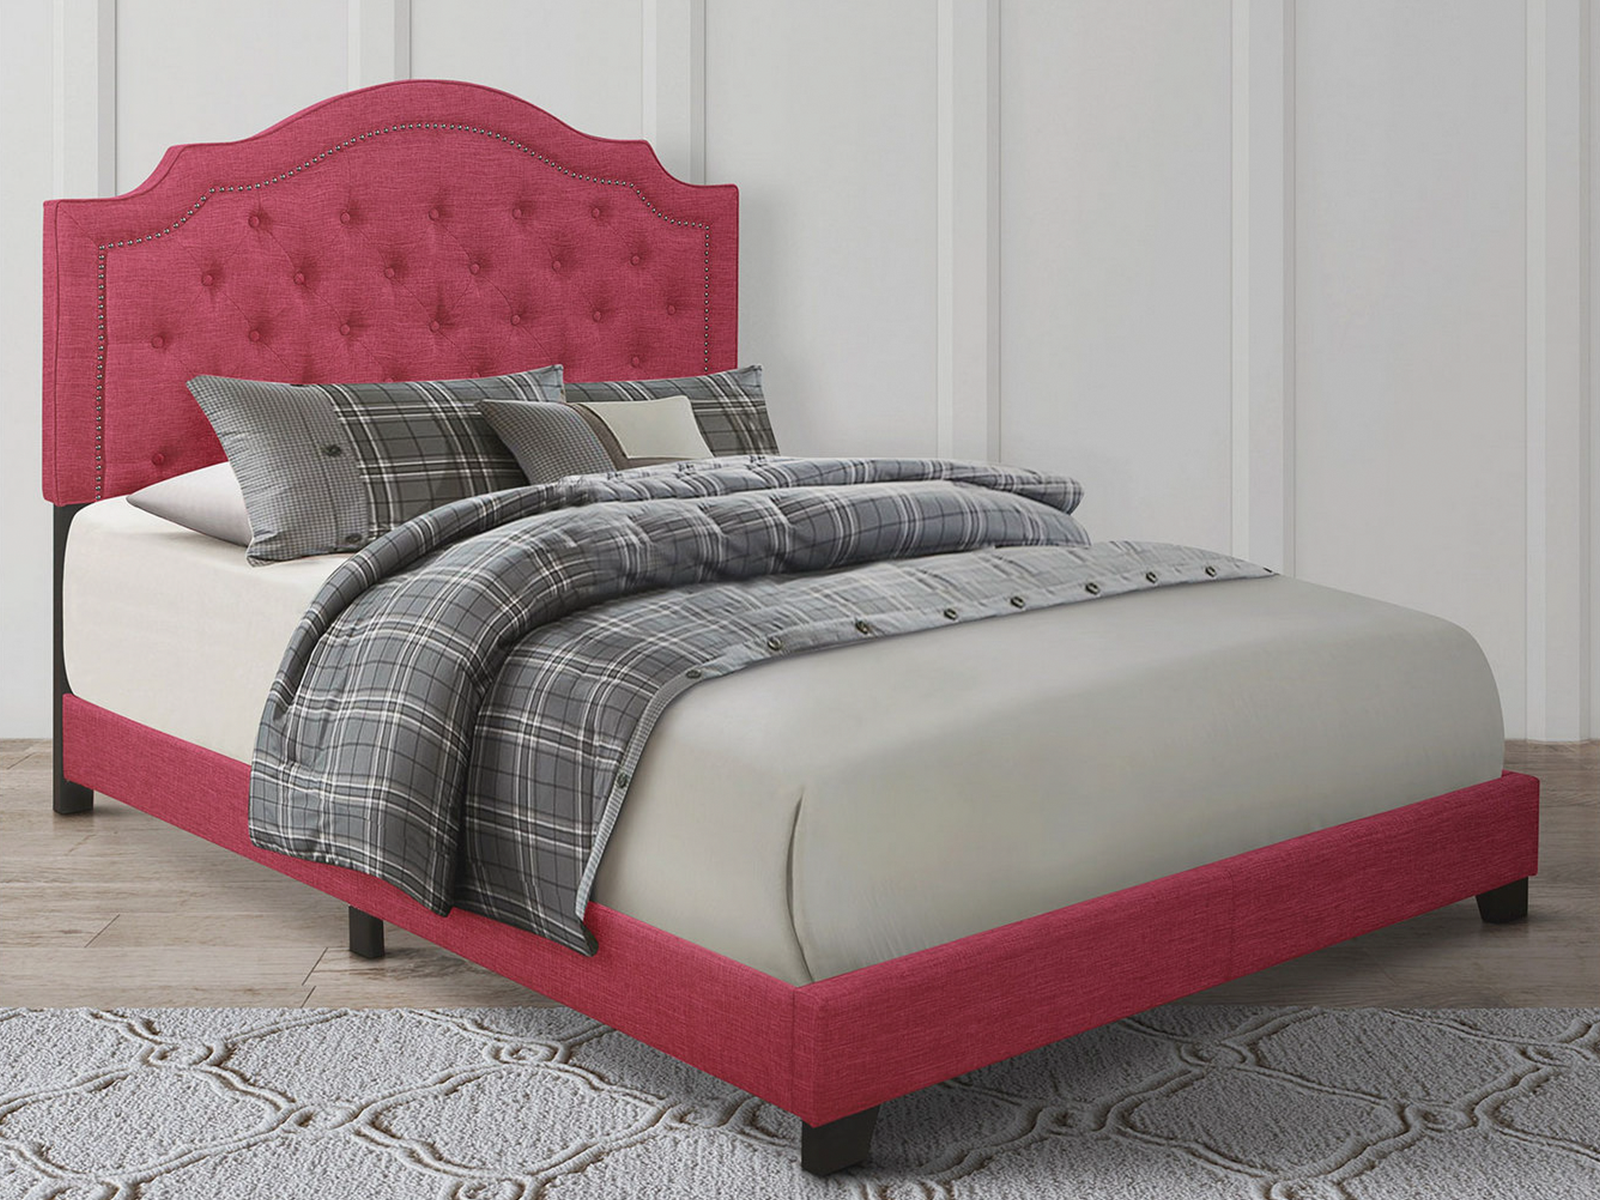 Homelegance Upholstered Bed Set | Queen | Harley Bed Frame & Headboard | Pink